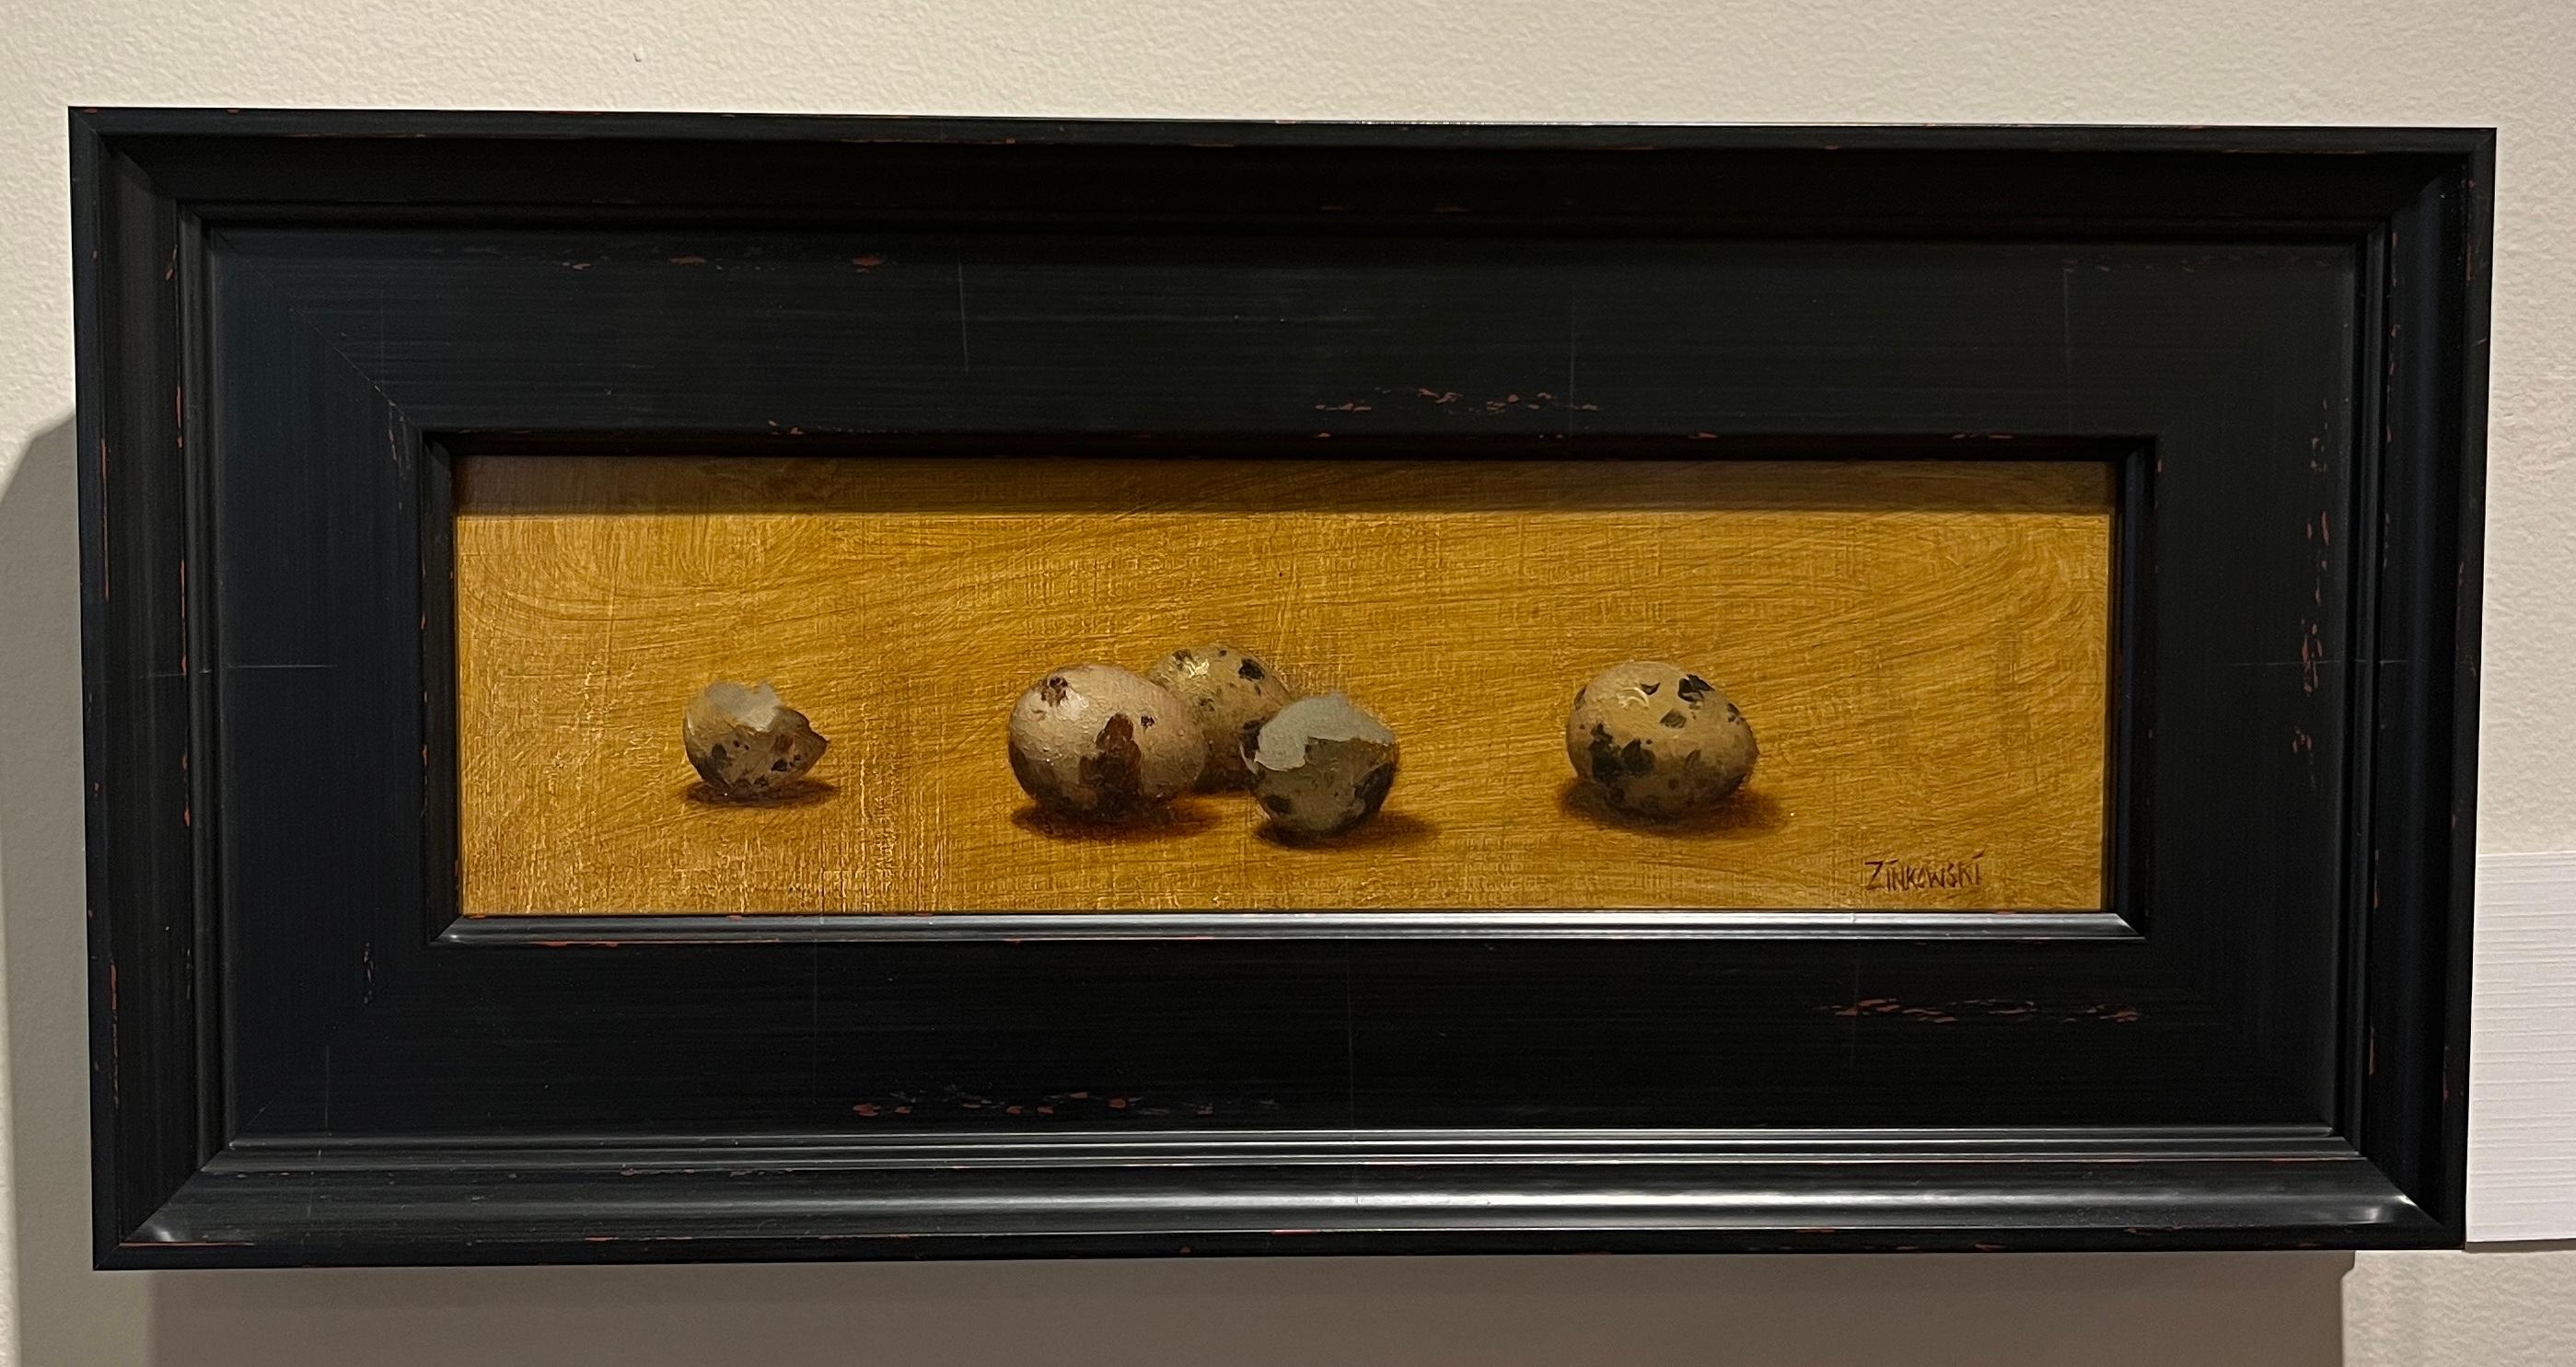 Œufs de caille - Painting de Dale Zinkowski